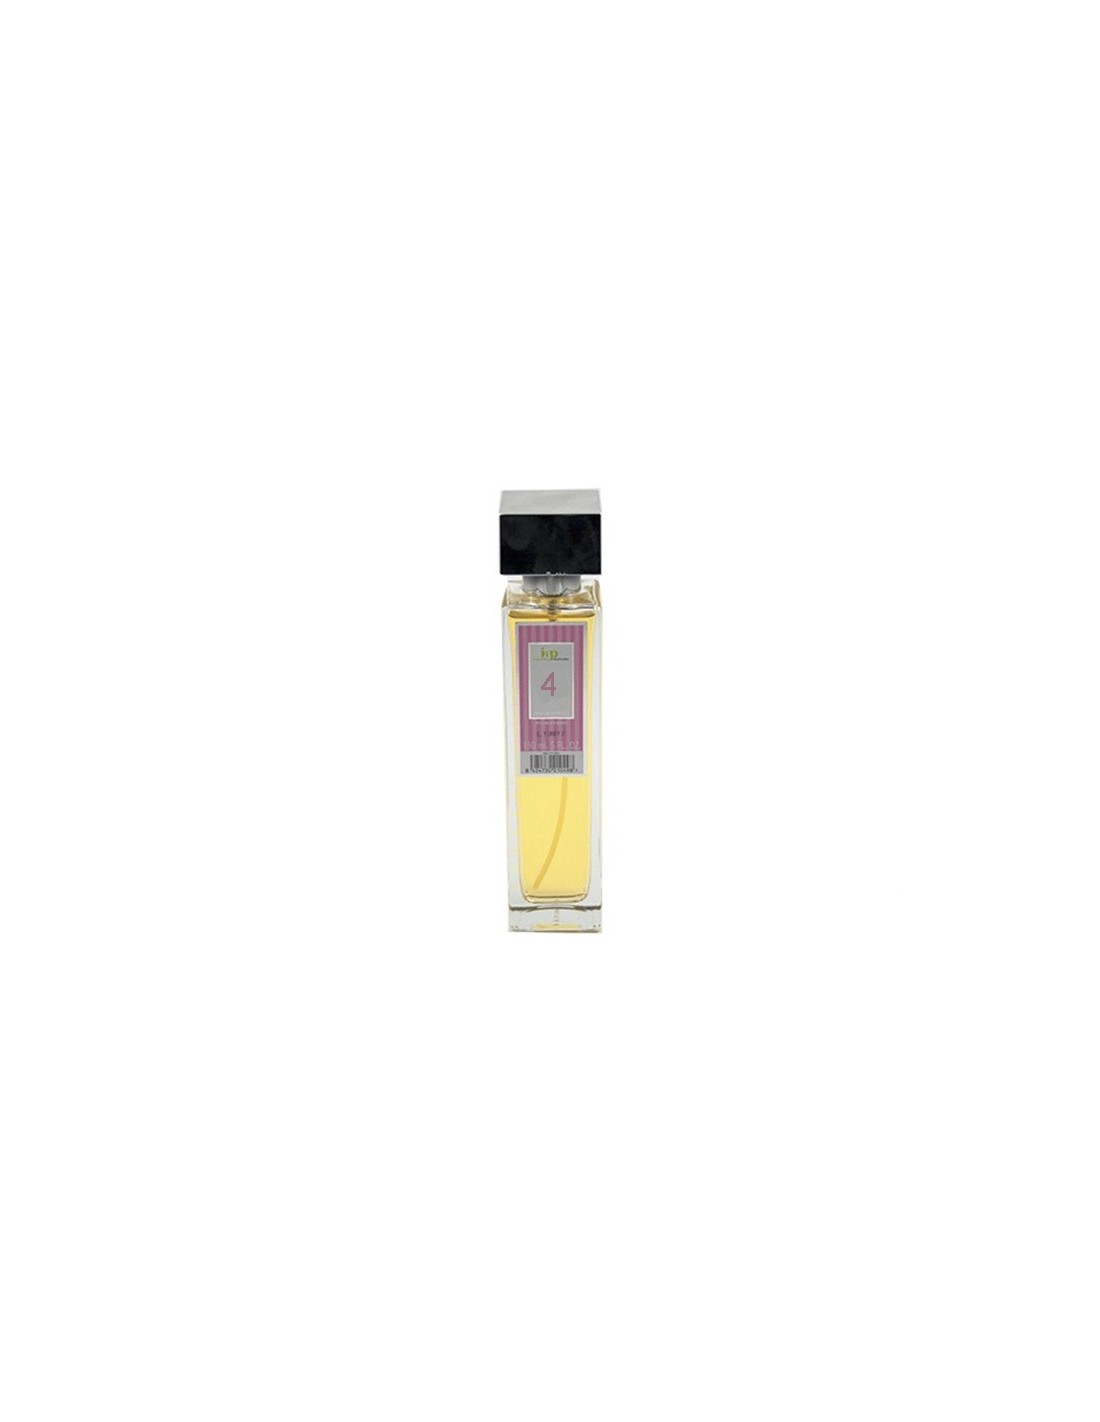 IAP Perfume Mujer N4 150ml